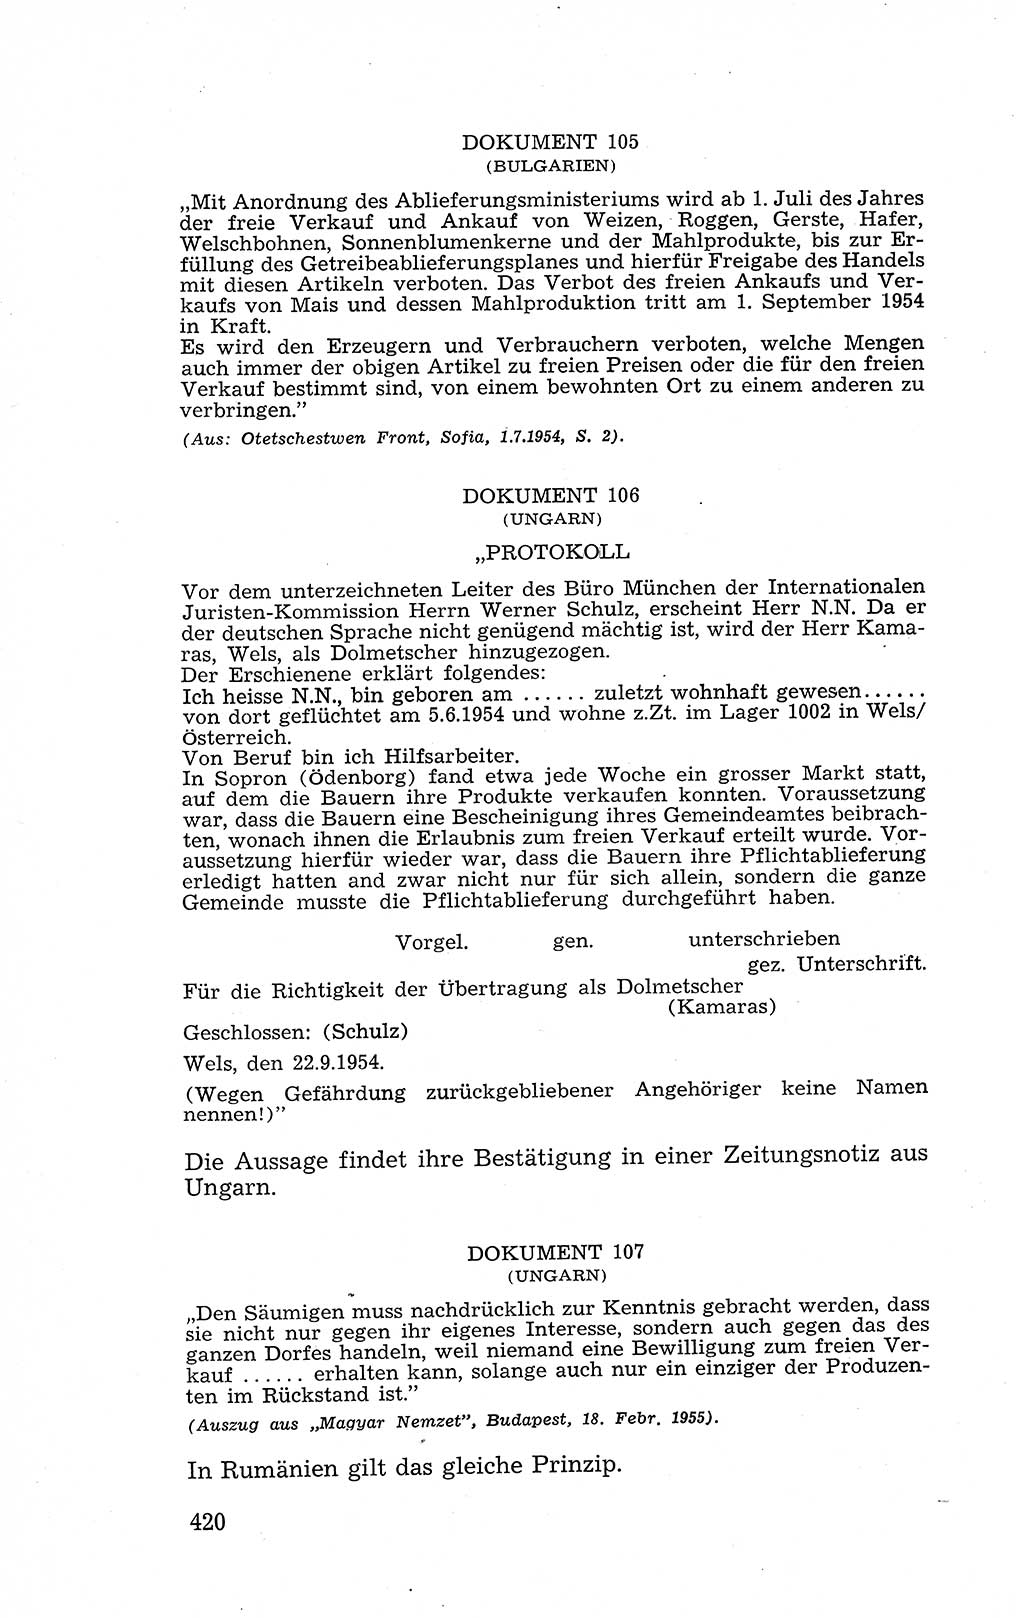 Recht in Fesseln, Dokumente, Internationale Juristen-Kommission [Bundesrepublik Deutschland (BRD)] 1955, Seite 420 (R. Dok. IJK BRD 1955, S. 420)